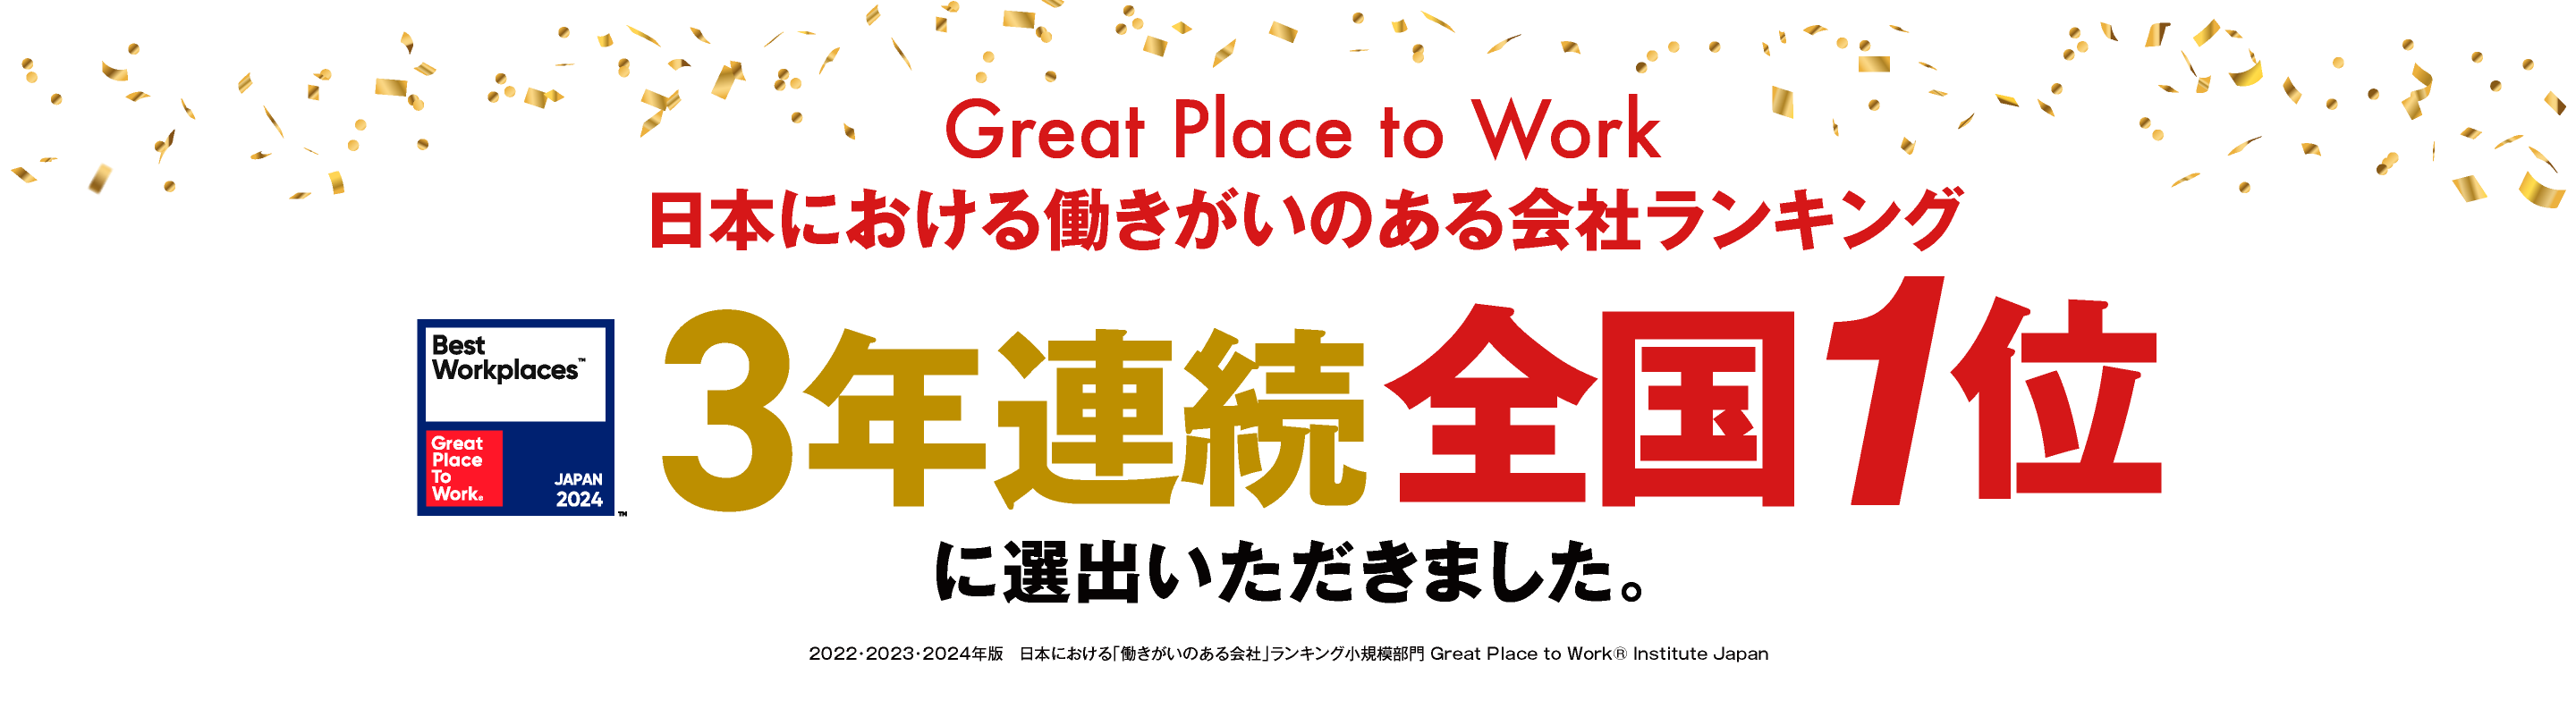 日本における働きがいのある会社ランキング2年連続全国1位に選出いただきました